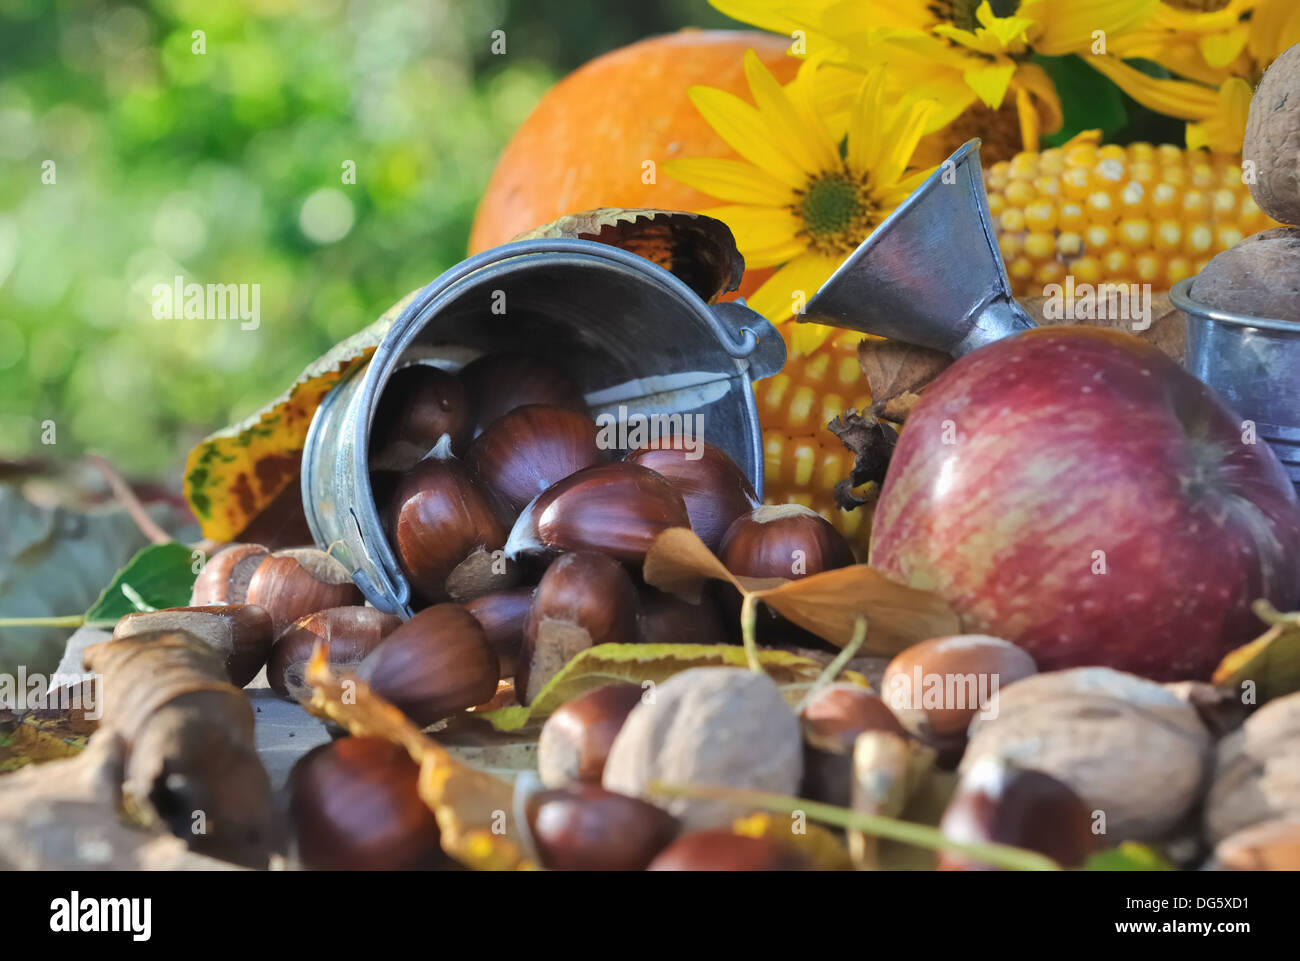 La châtaigne et autres fruits de saison dans un décor d'automne Banque D'Images